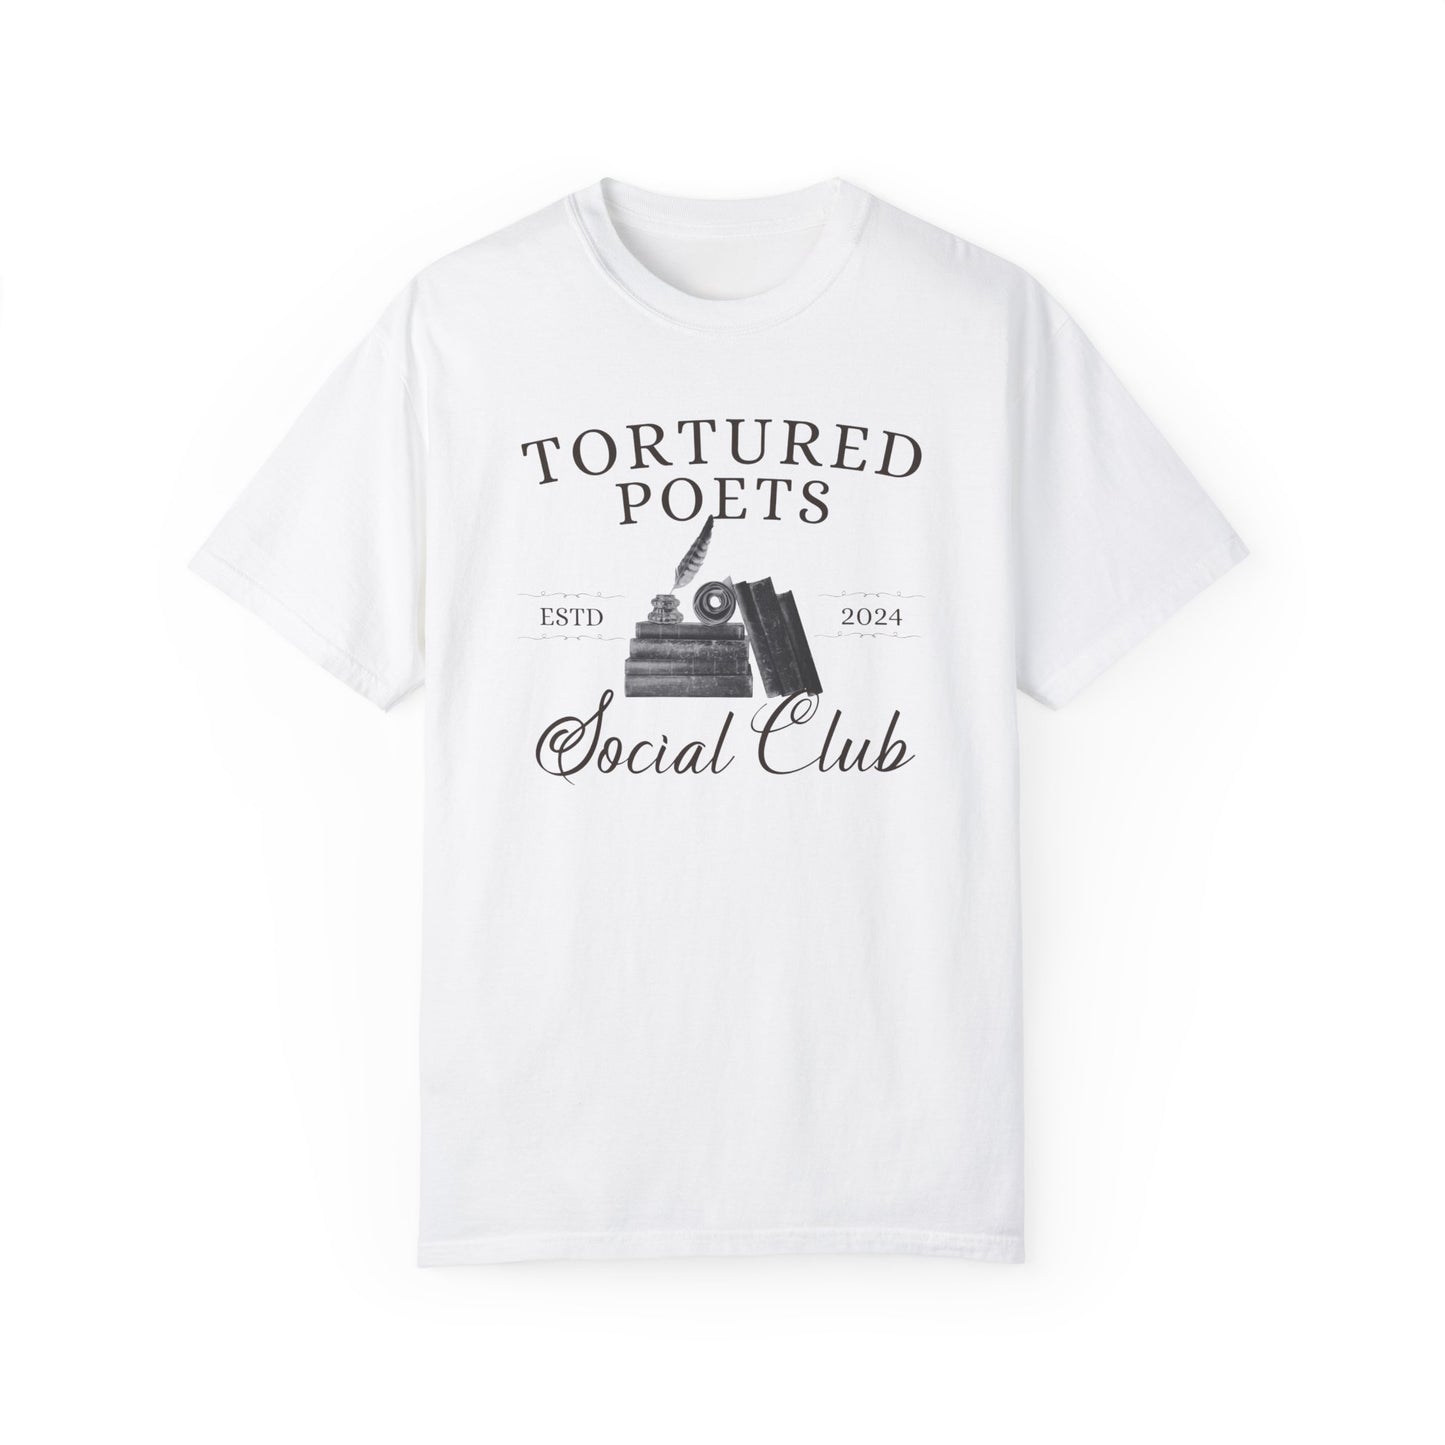 Tortured Poets Social Club T-shirt